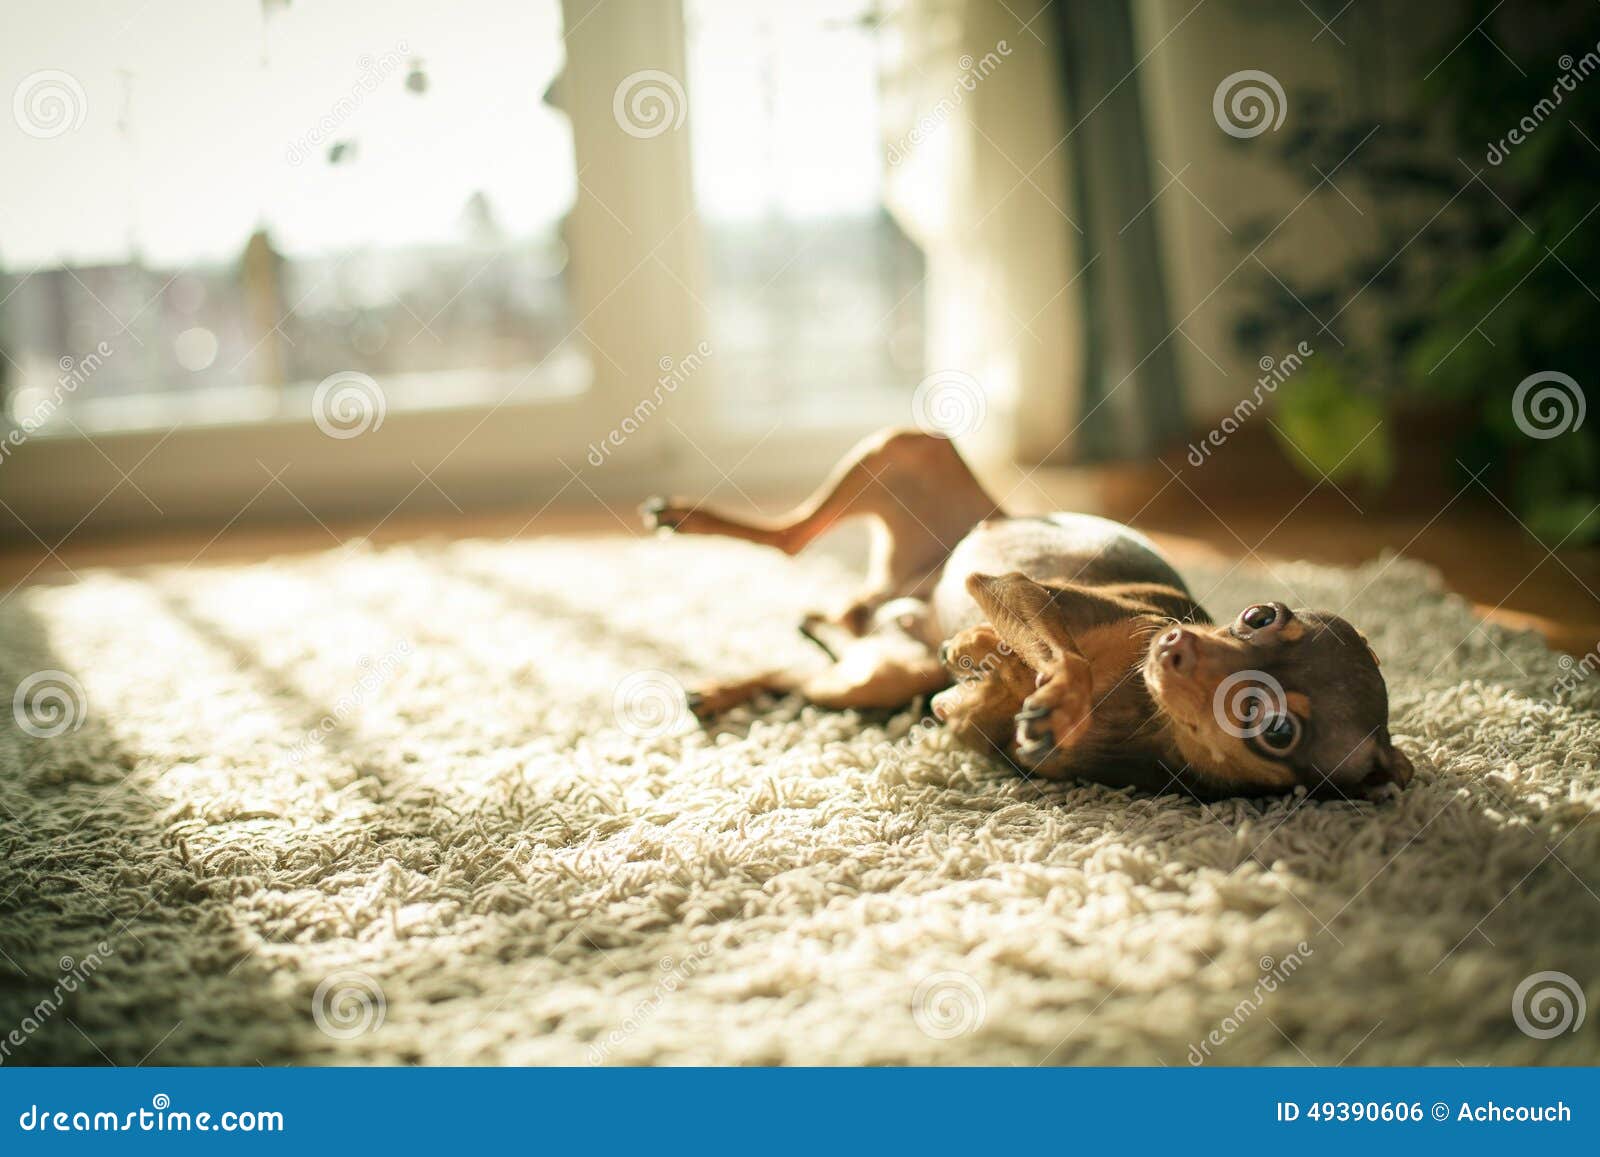 Russischer Spielzeugterrierhund. Russischer Spielzeugterrier ist ein Begleiterhund Ihre Höhe (in verwelkt), kann sich von 8 bis 10 Zoll (19-29 cm unterscheiden ) mit einem Gewicht überall von 3 bis 6 Pfund (1-2 Lebenserwartung von ungefähr 20 Jahren